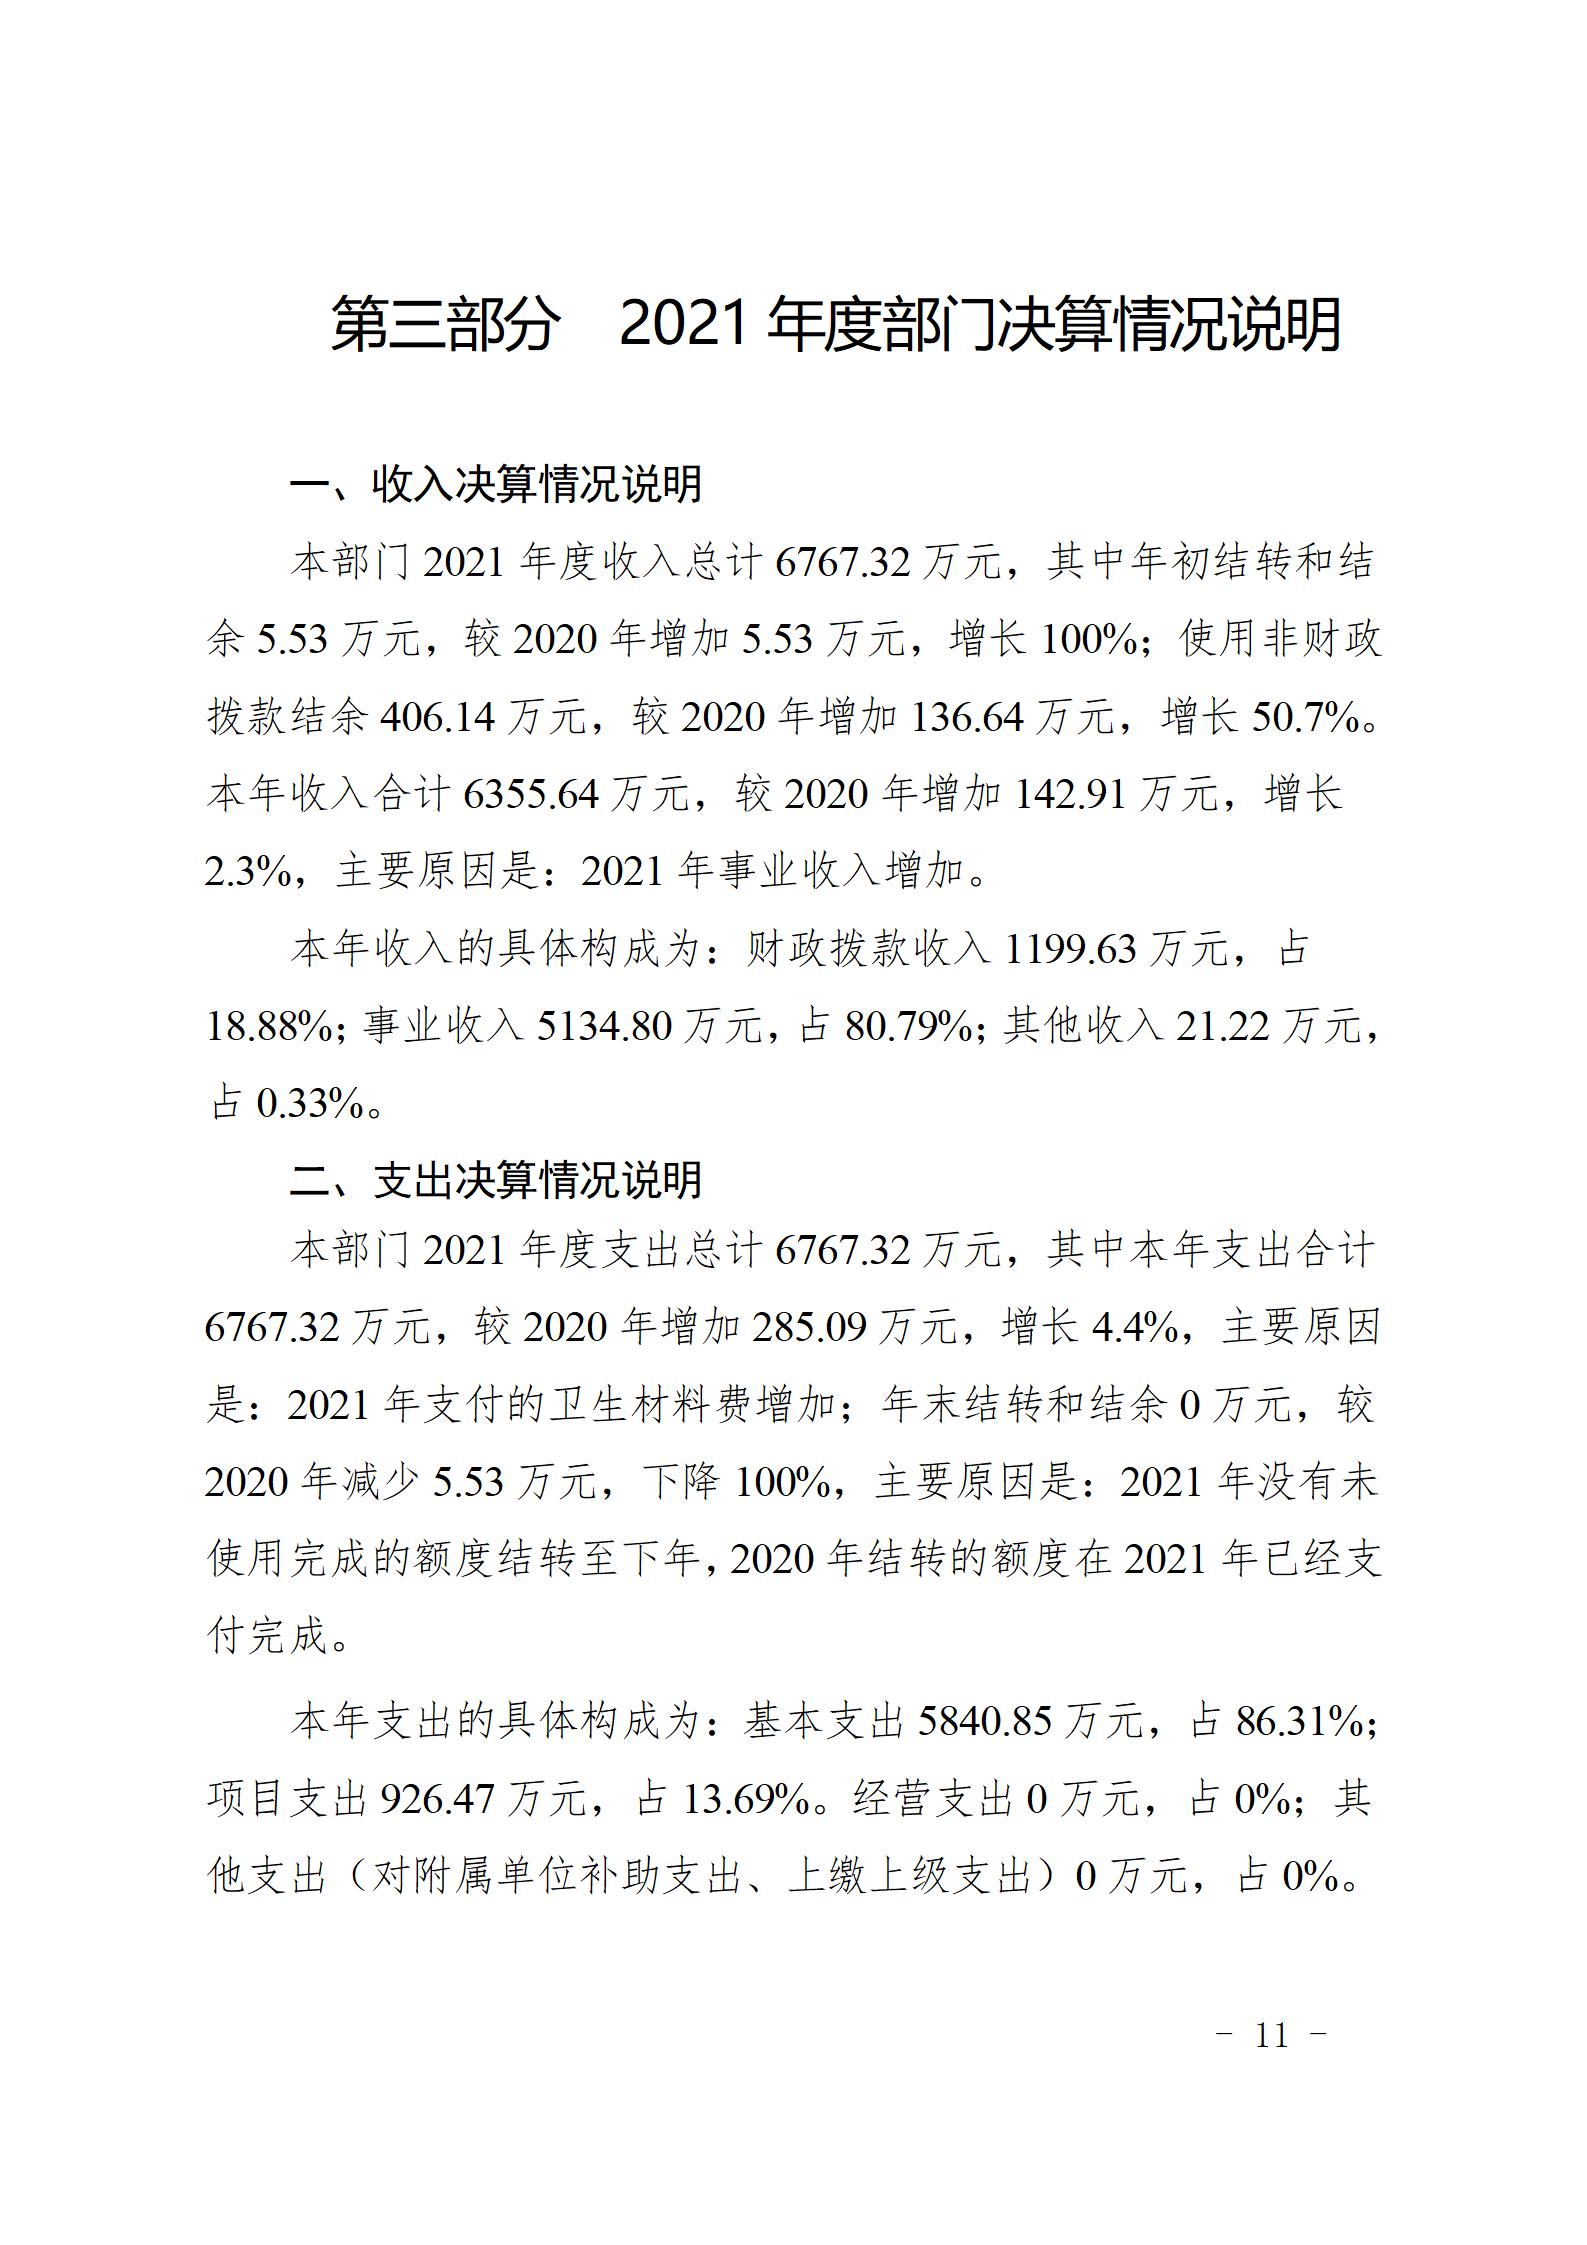 宜春学院第二附属医院2021年部门决算公开_11.jpg